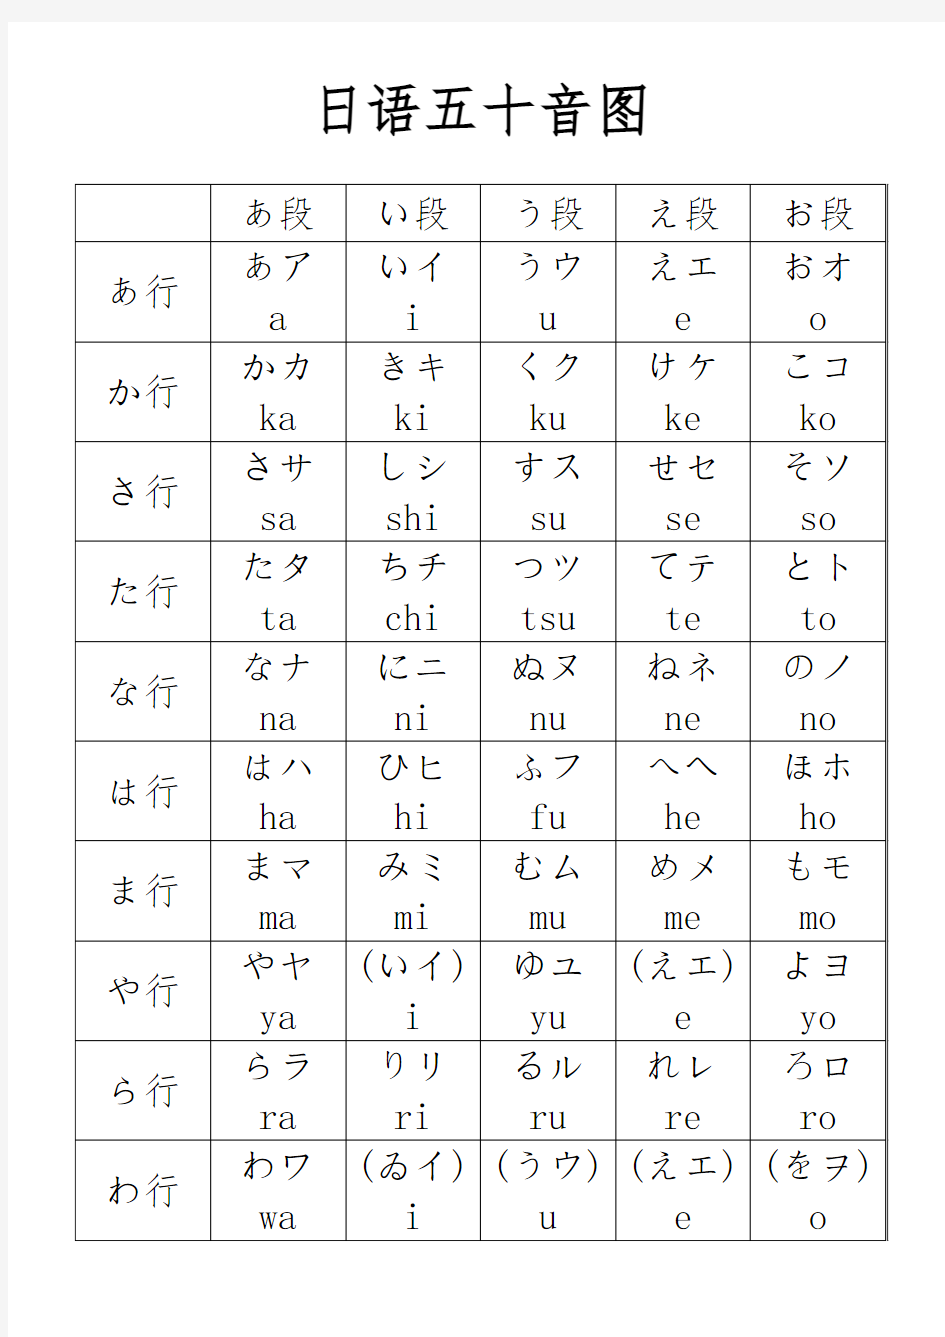 日语五十音图与发音规则